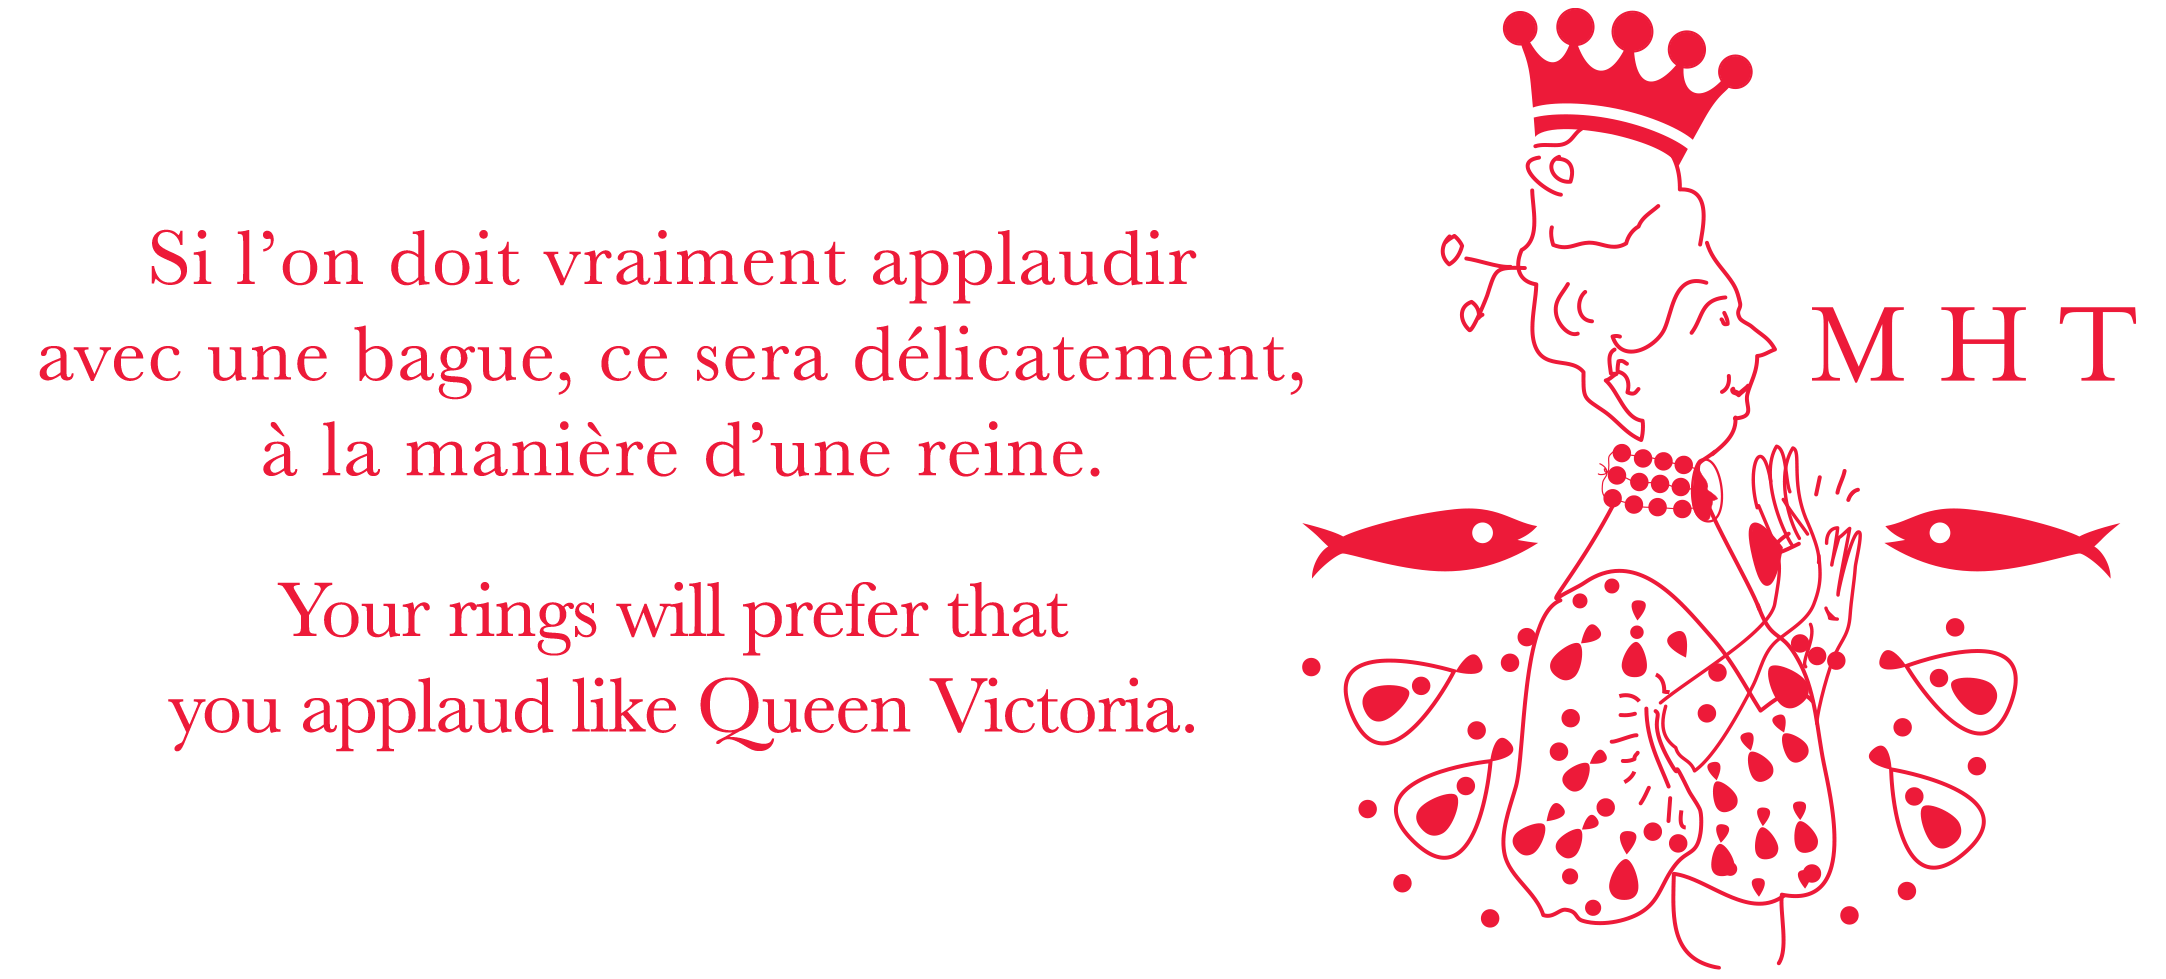 Si l’on doit vraiment applaudir  avec une bague, ce sera délicatement,  à la manière d’une reine.